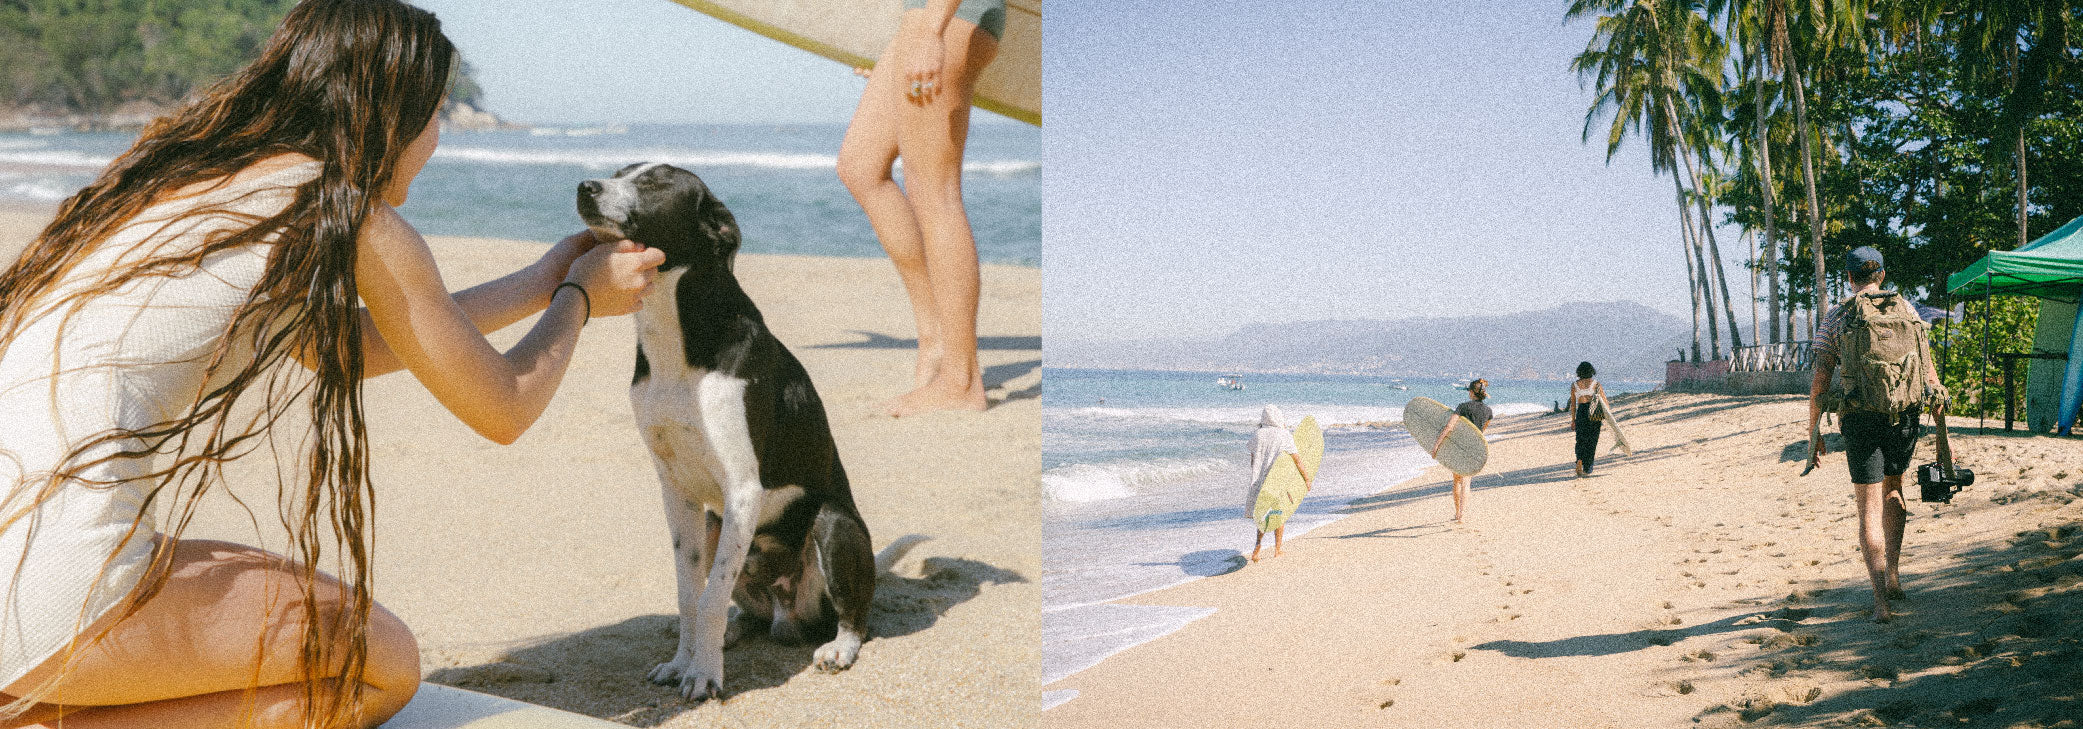 dog beach Mexico walk longboard photoshoot white one piece